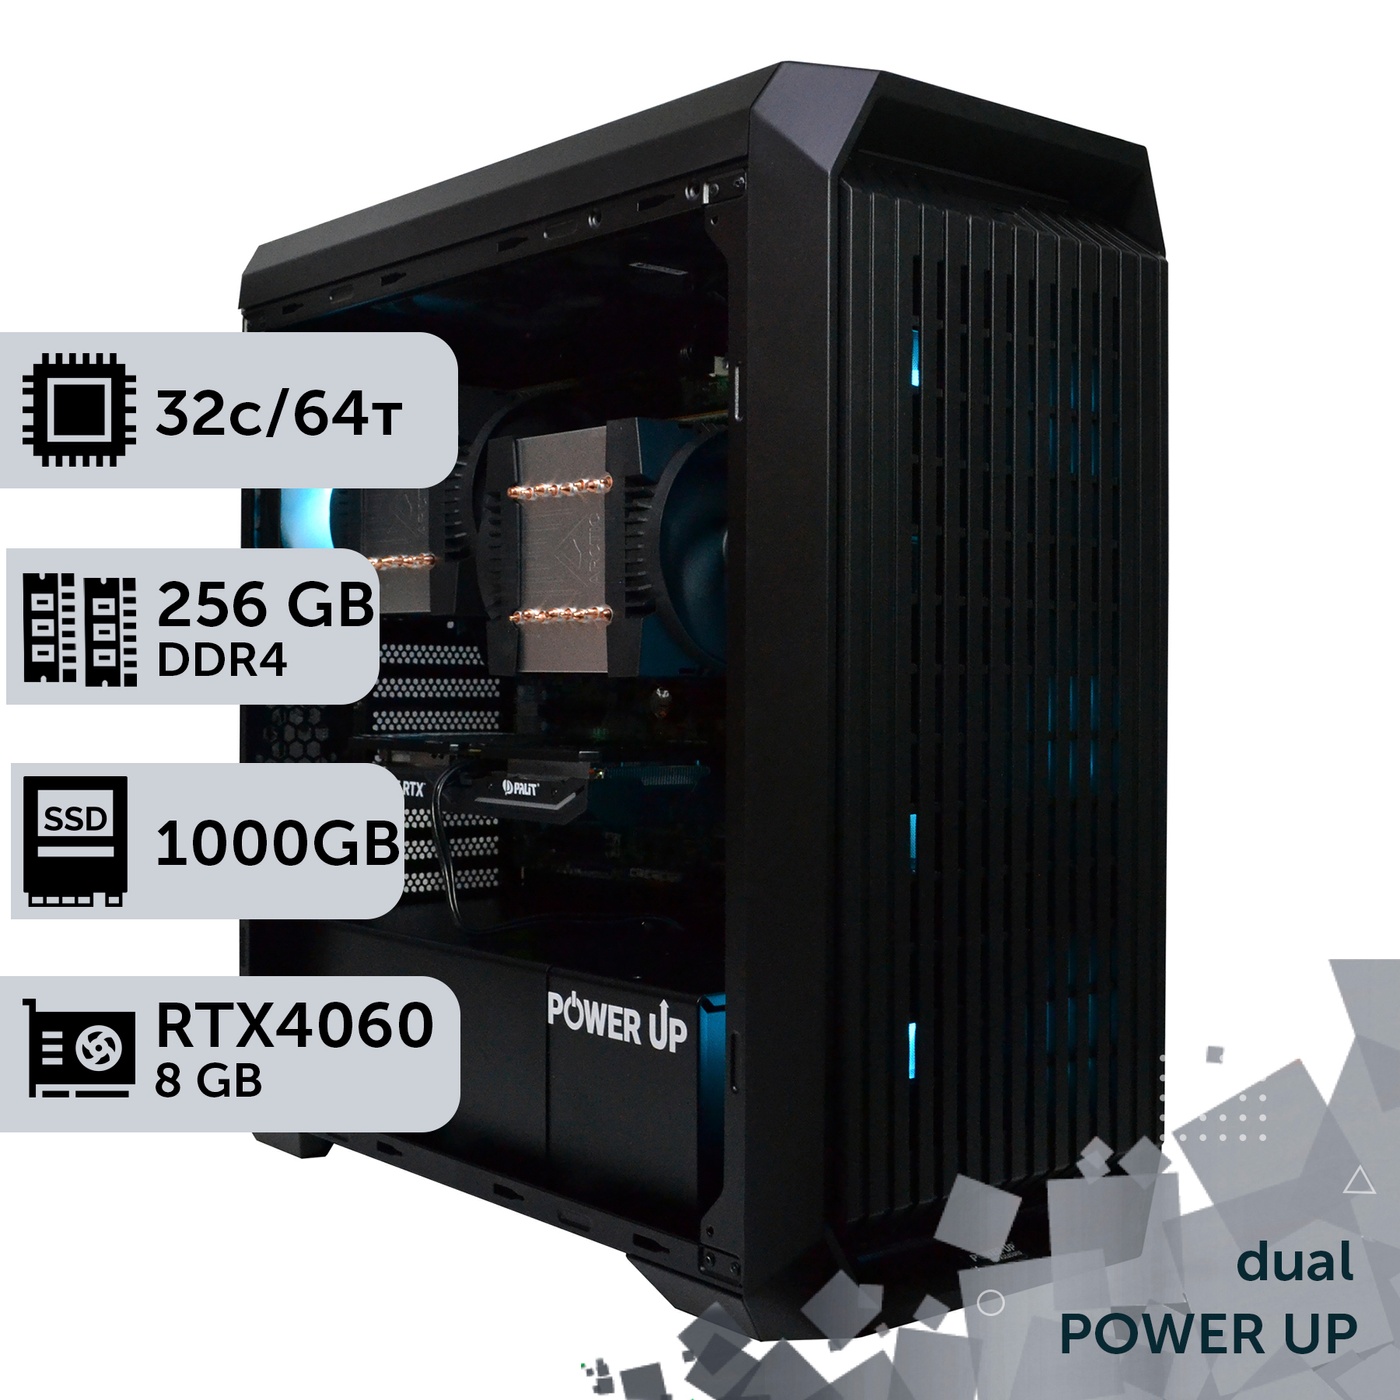 Двопроцесорна робоча станція PowerUp #376 AMD EPYC 7282 x2/256 GB/SSD 1TB/GeForce RTX 4060 8GB